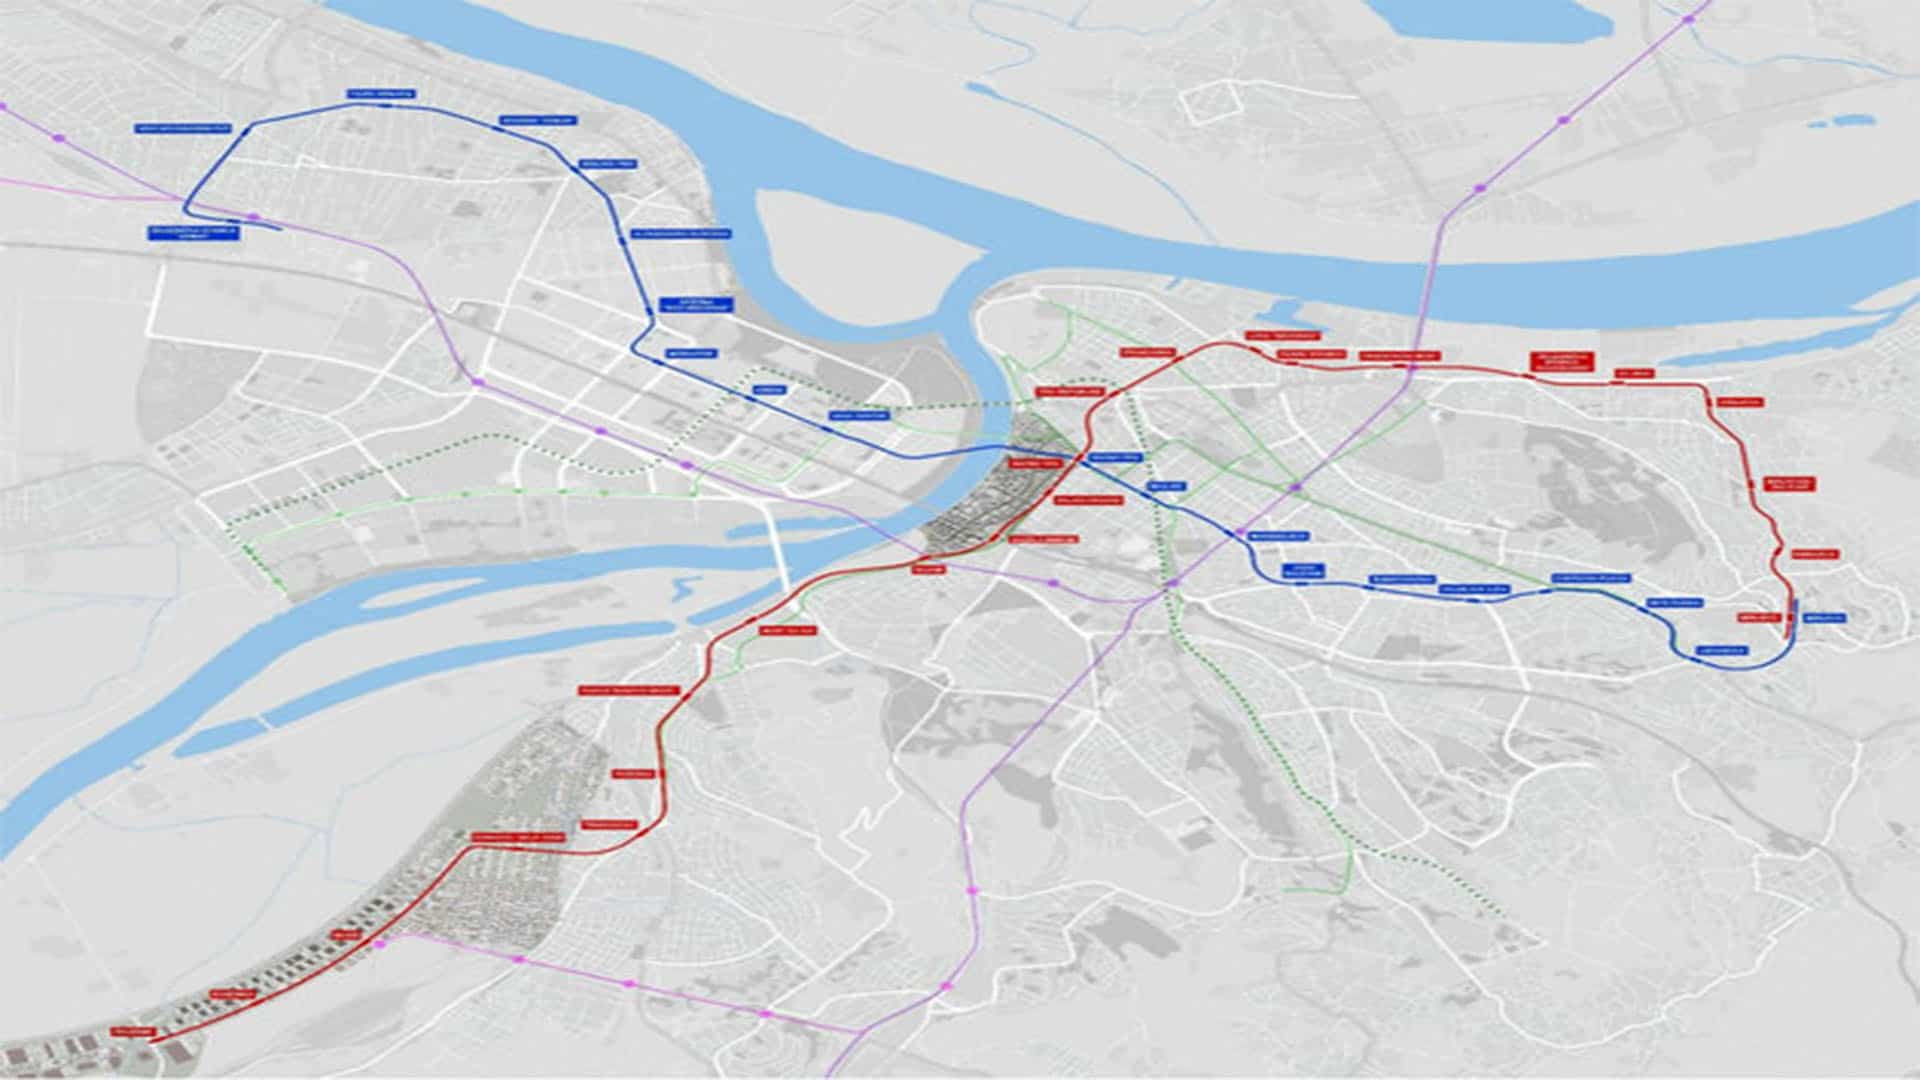 Кинези ће градити београдски метро за 4.4 милијарде евра, а Французи ће му обезбедити „механику и електронику“ (видео)